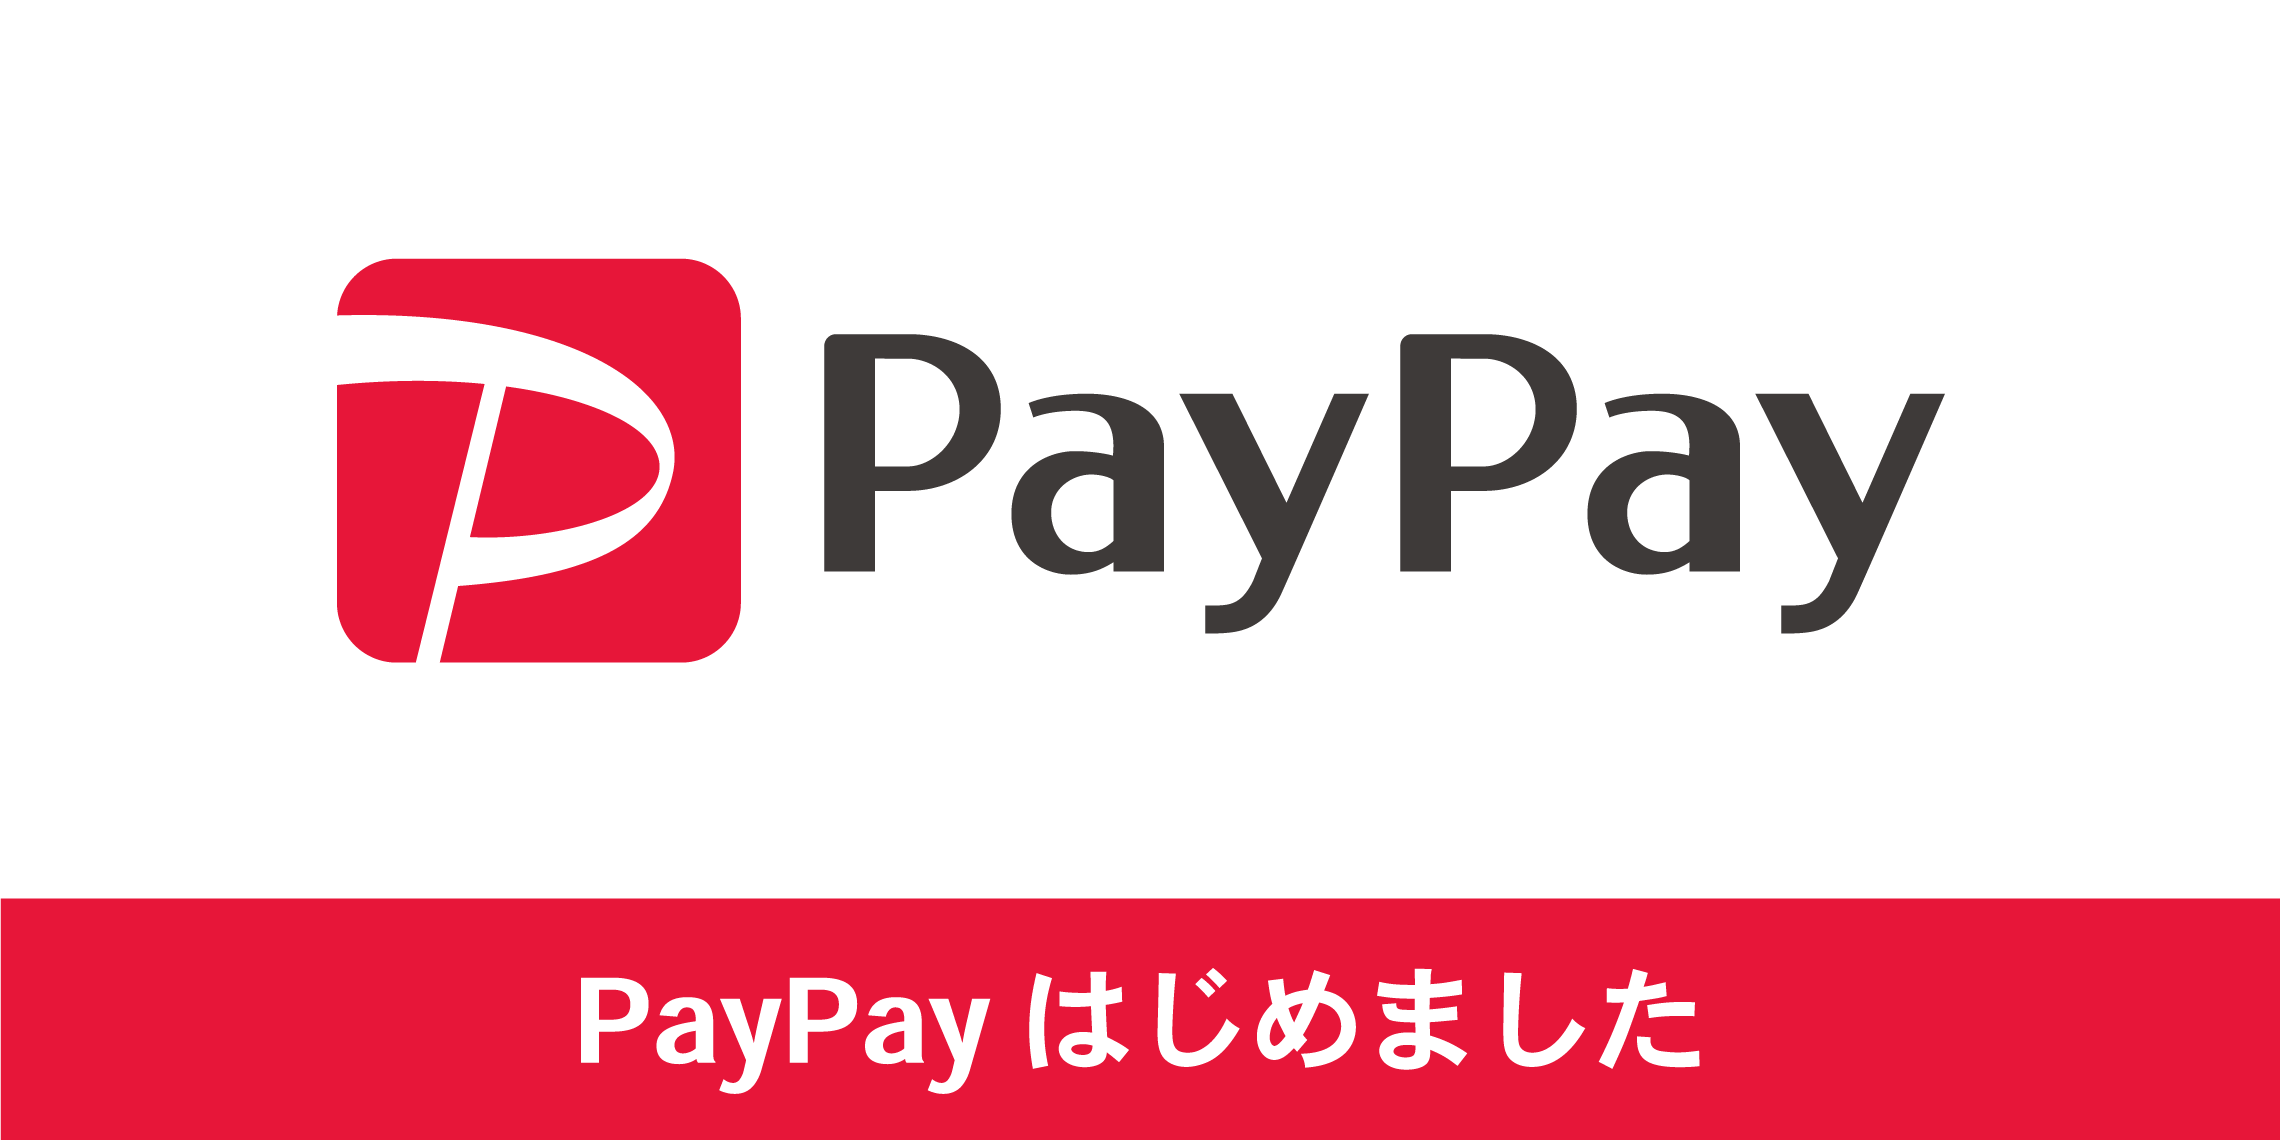 *カンタン便利なQRコード決済「PayPay」当店でも利用可能です。 当店では、QRコード決済サービス『PayPay（ペイペイ）』によるお支払ができるようになりました。スマートフォンの専用アプリを使って店舗にあるQRコードを読み取るだけで、電子マネーや登録したクレジットカードからお支払いができます。 […]